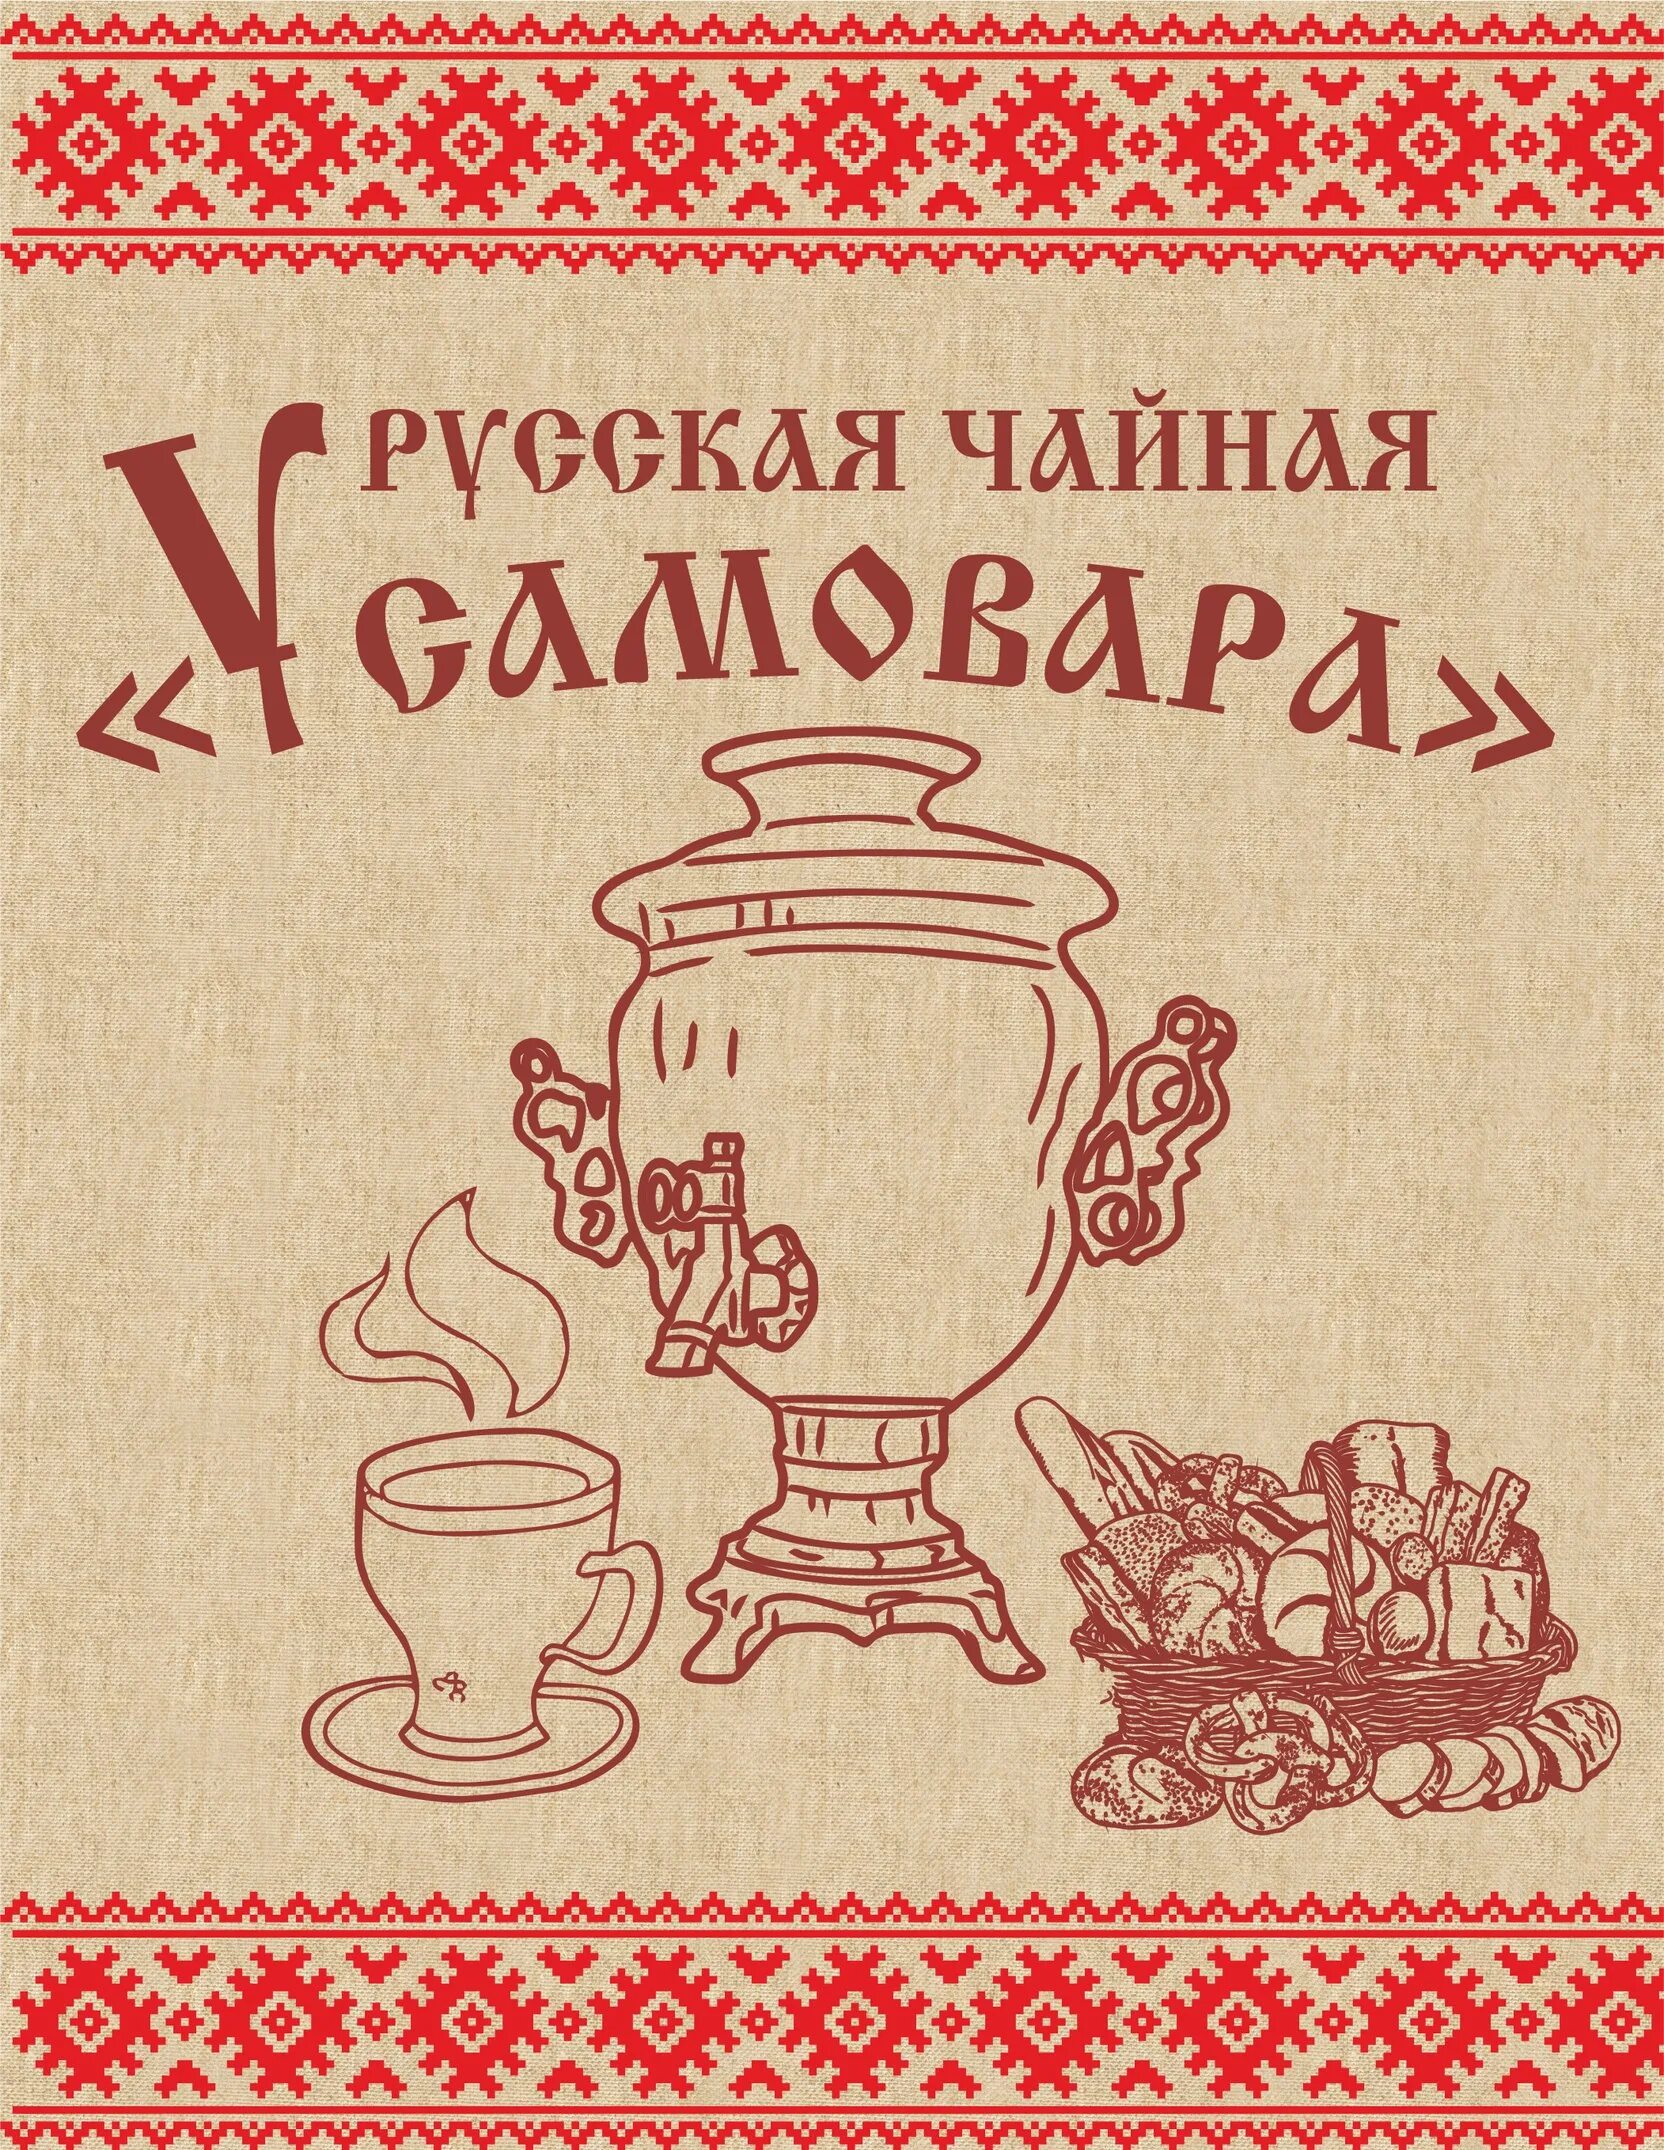 Чаепитие объявление. Традиционный русский самовар. Русское чаепитие. Приглашение на чаепитие. Чай из самовара.